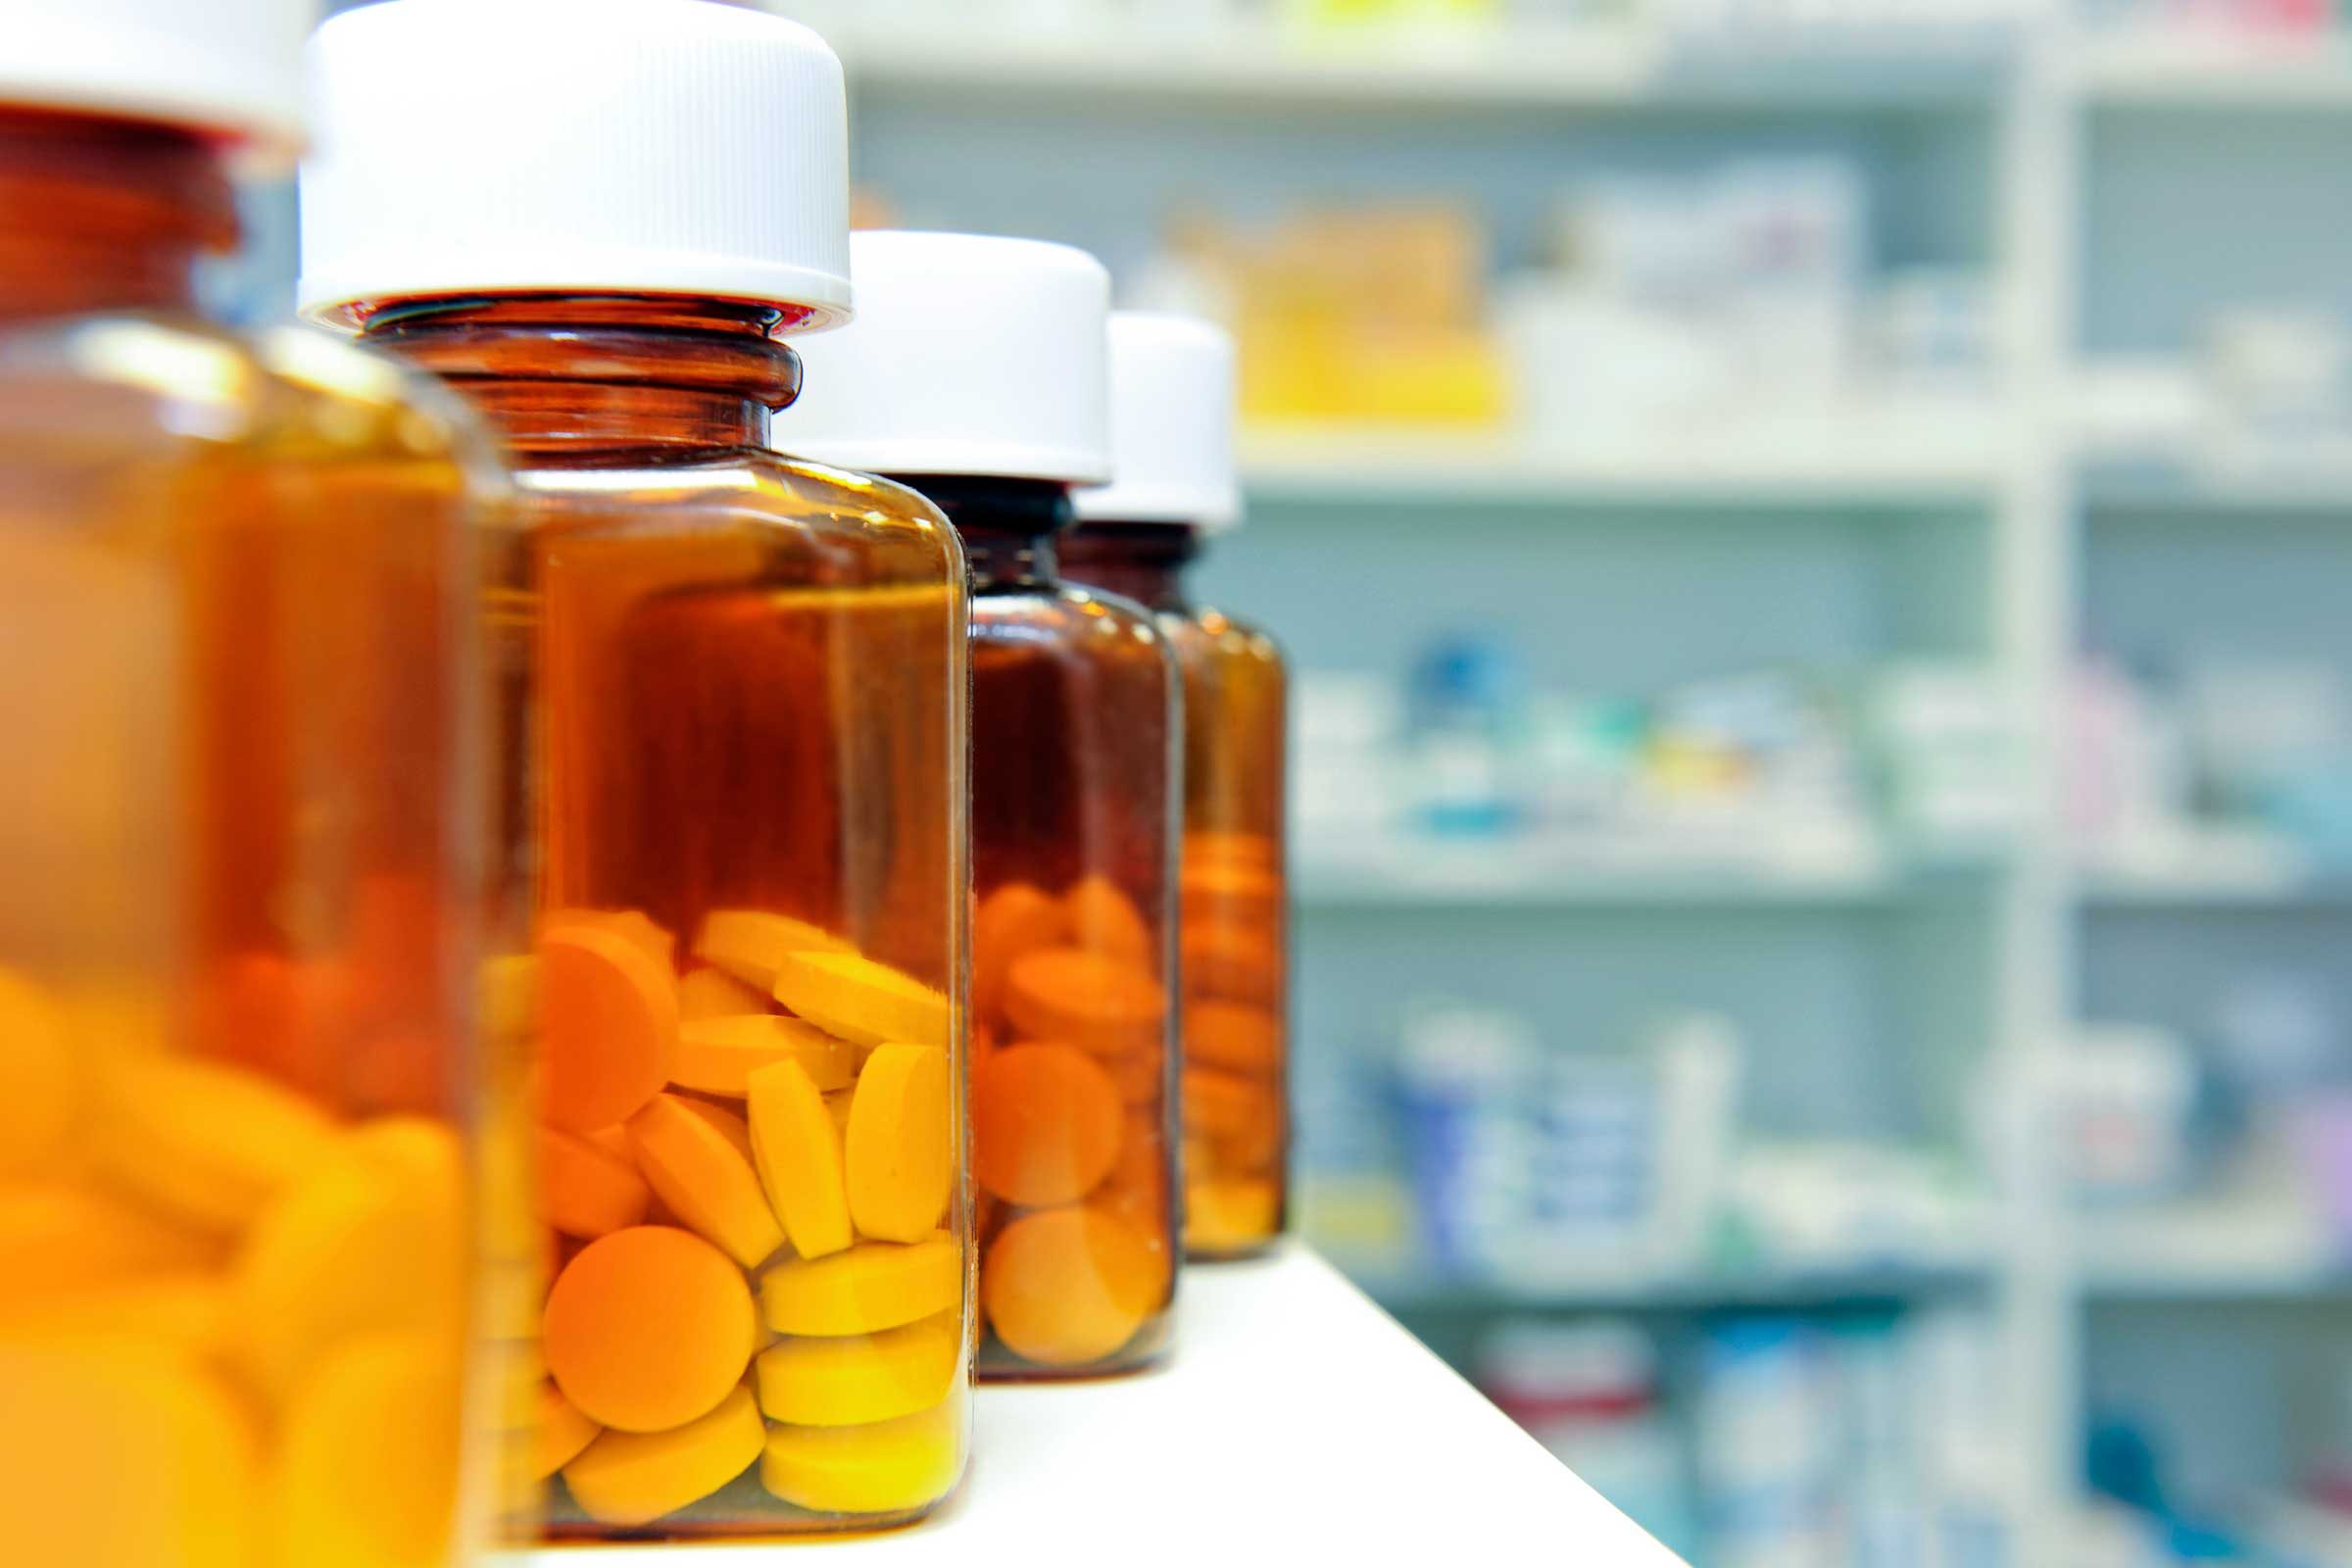 pill bottles on a pharmacy shelf